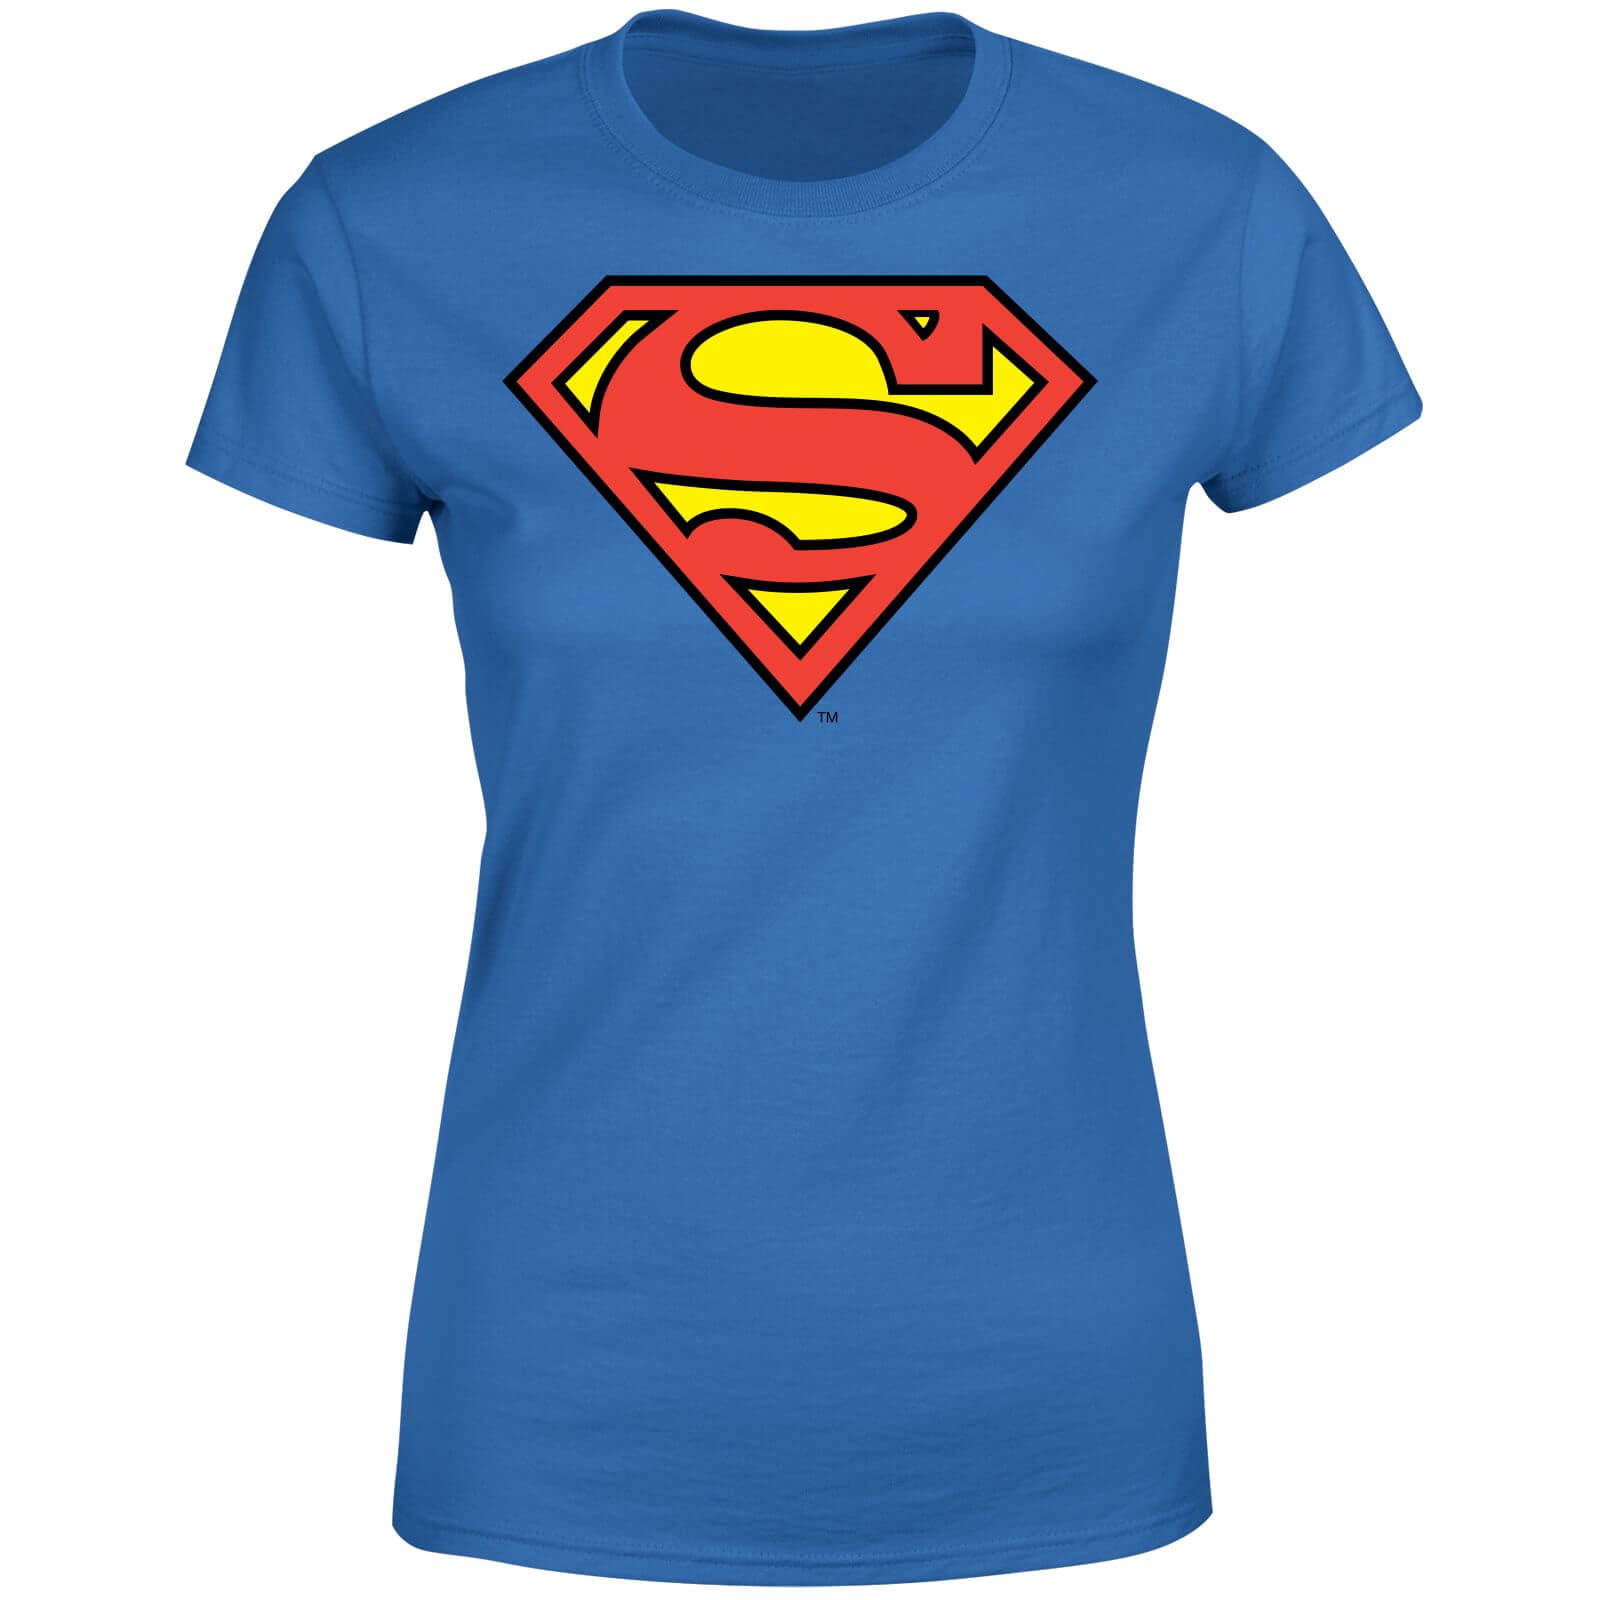 DC Originals Official Superman Shield Women's T-Shirt - Royal Blue - S